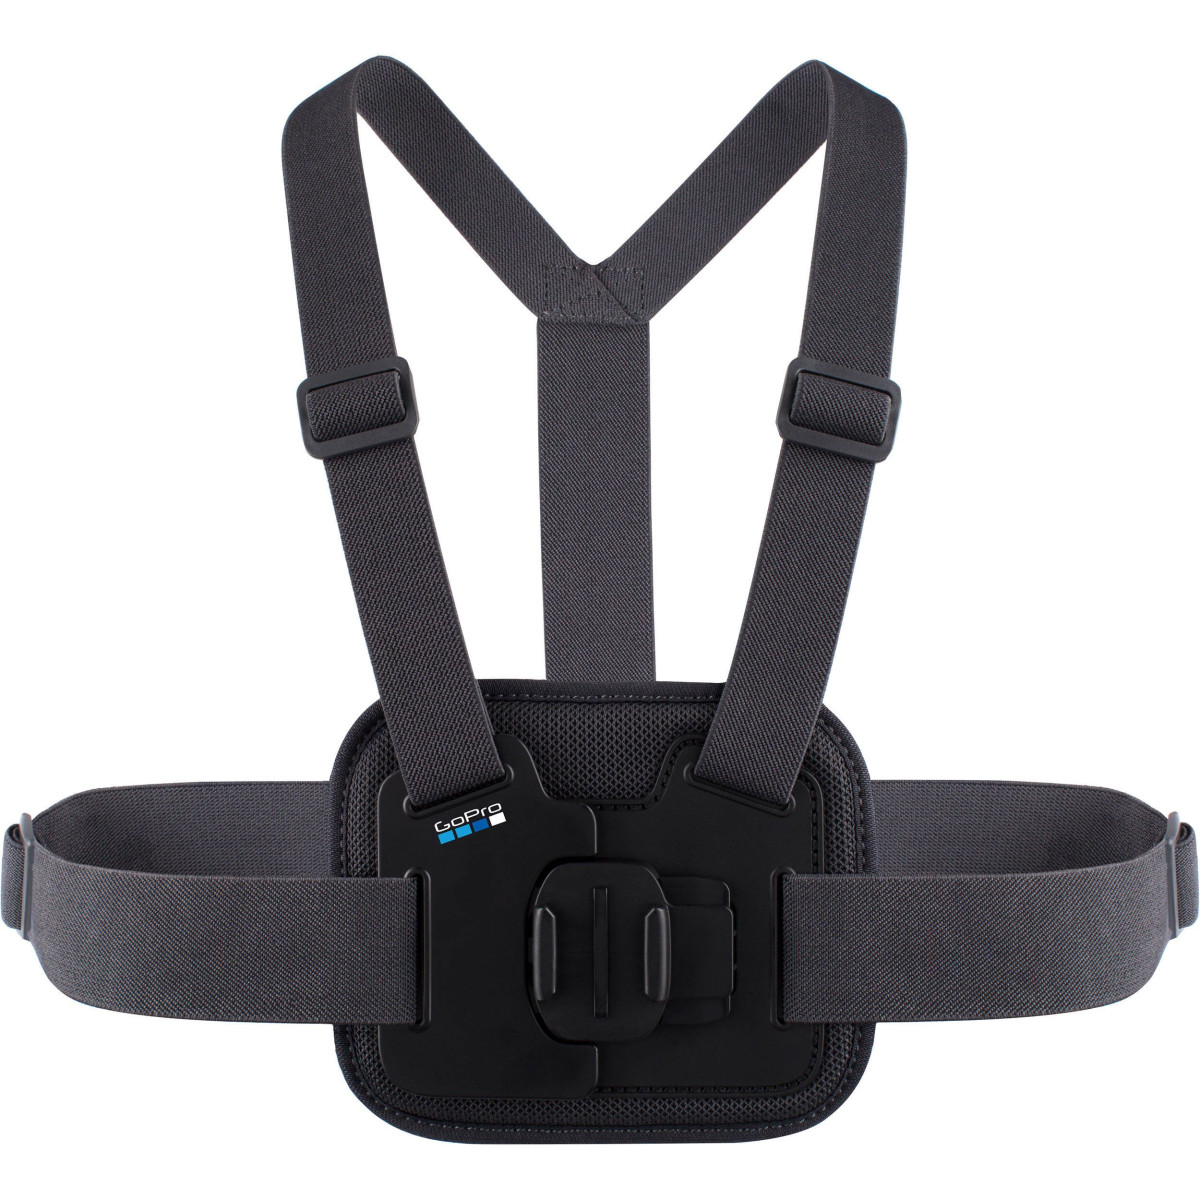 Аксесуар для екшн-камер GoPro Chesty chest harness (AGCHM-001)